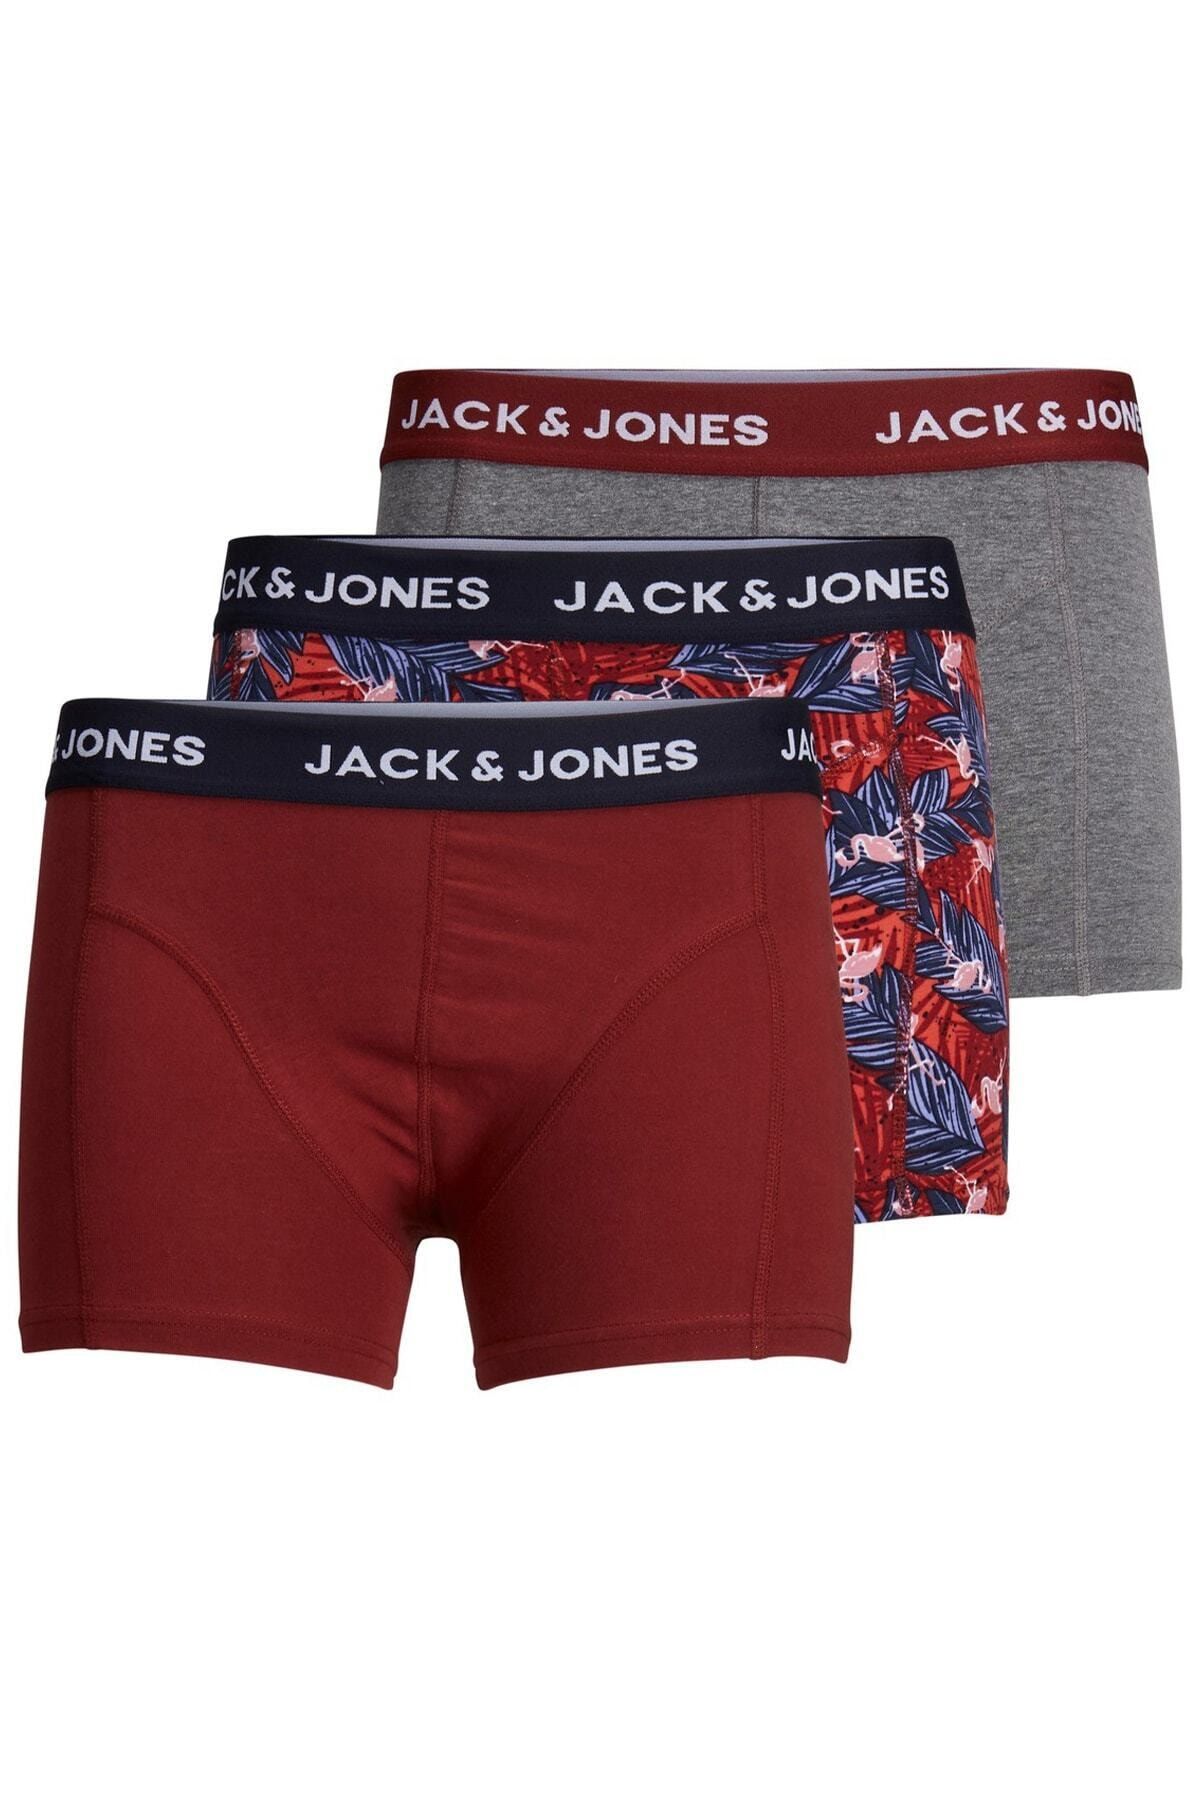 Jack & Jones Erkek Boxer 3lü Kutu - 12192800